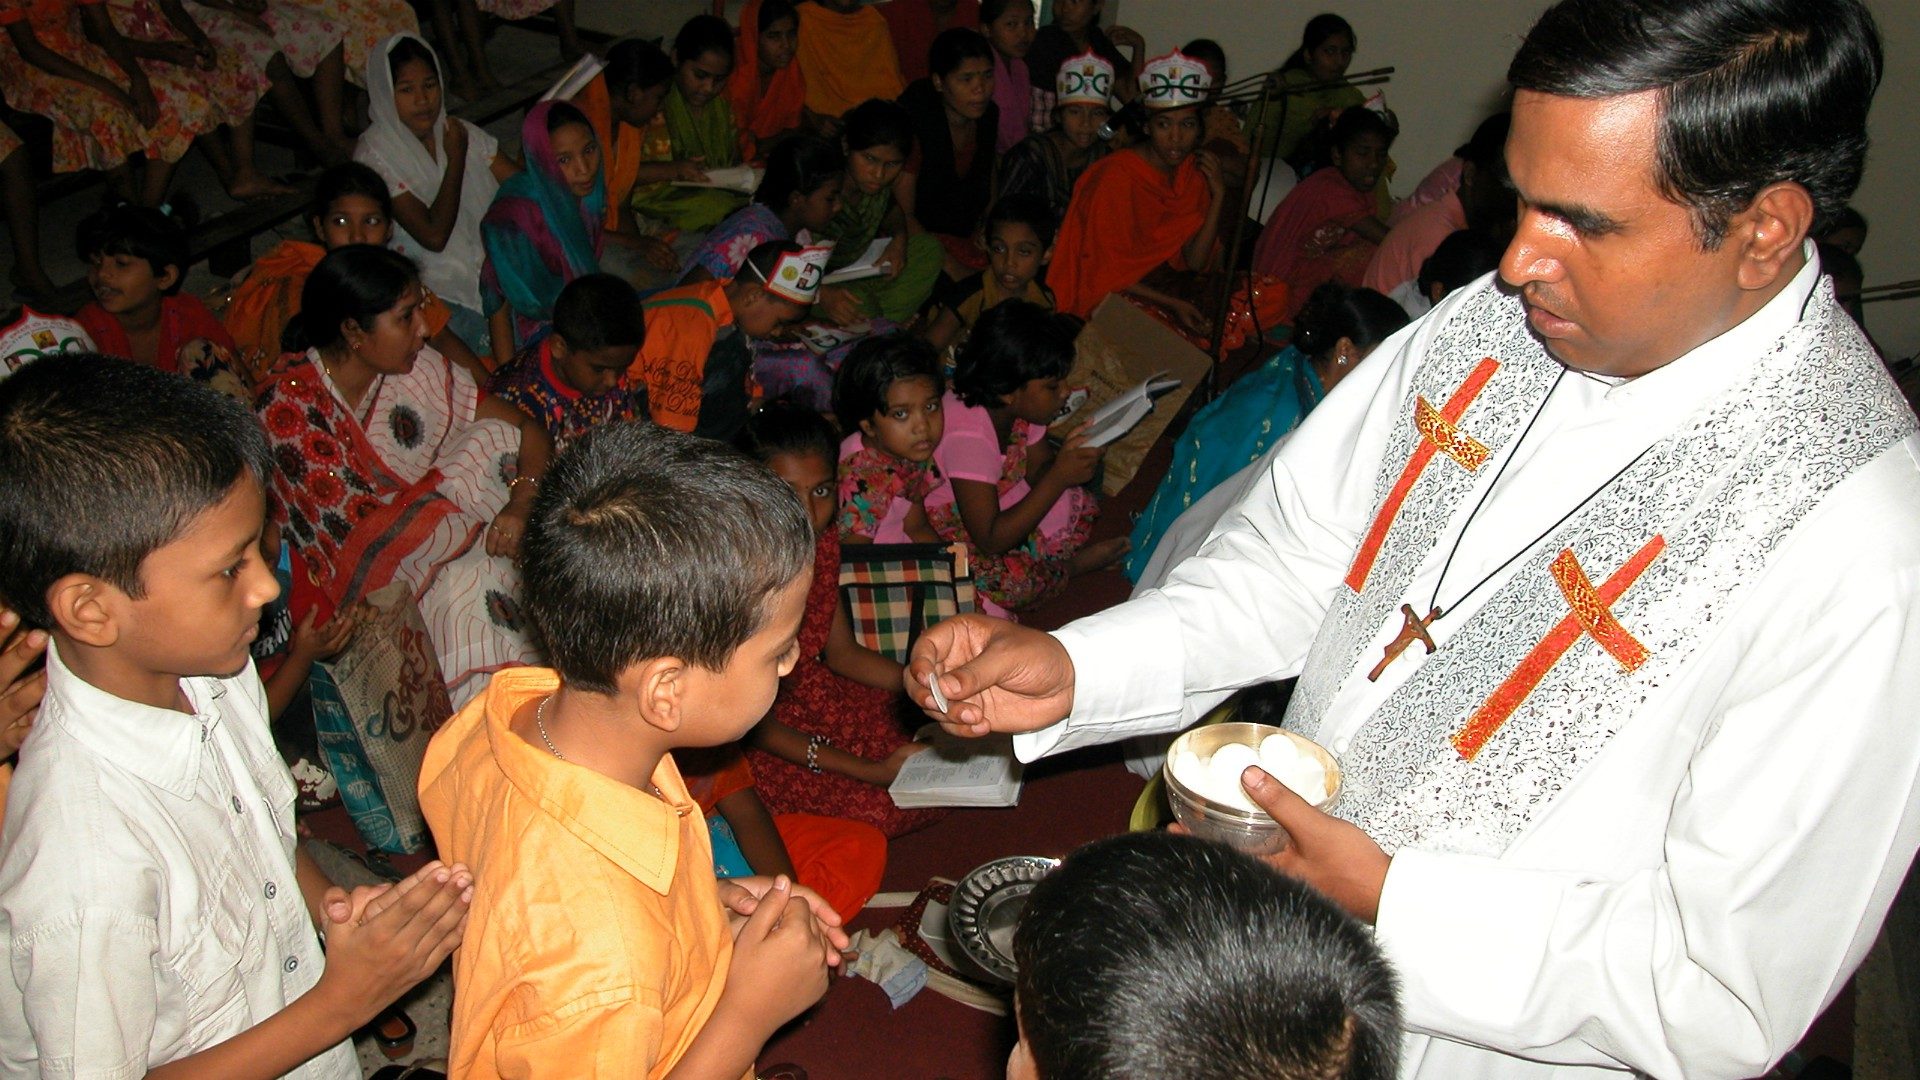 Les catholiques sont une toute petite minorité au Bangladesh (Photo:Amio James Ascension/Flickr/CC BY-NC-ND 2.0)